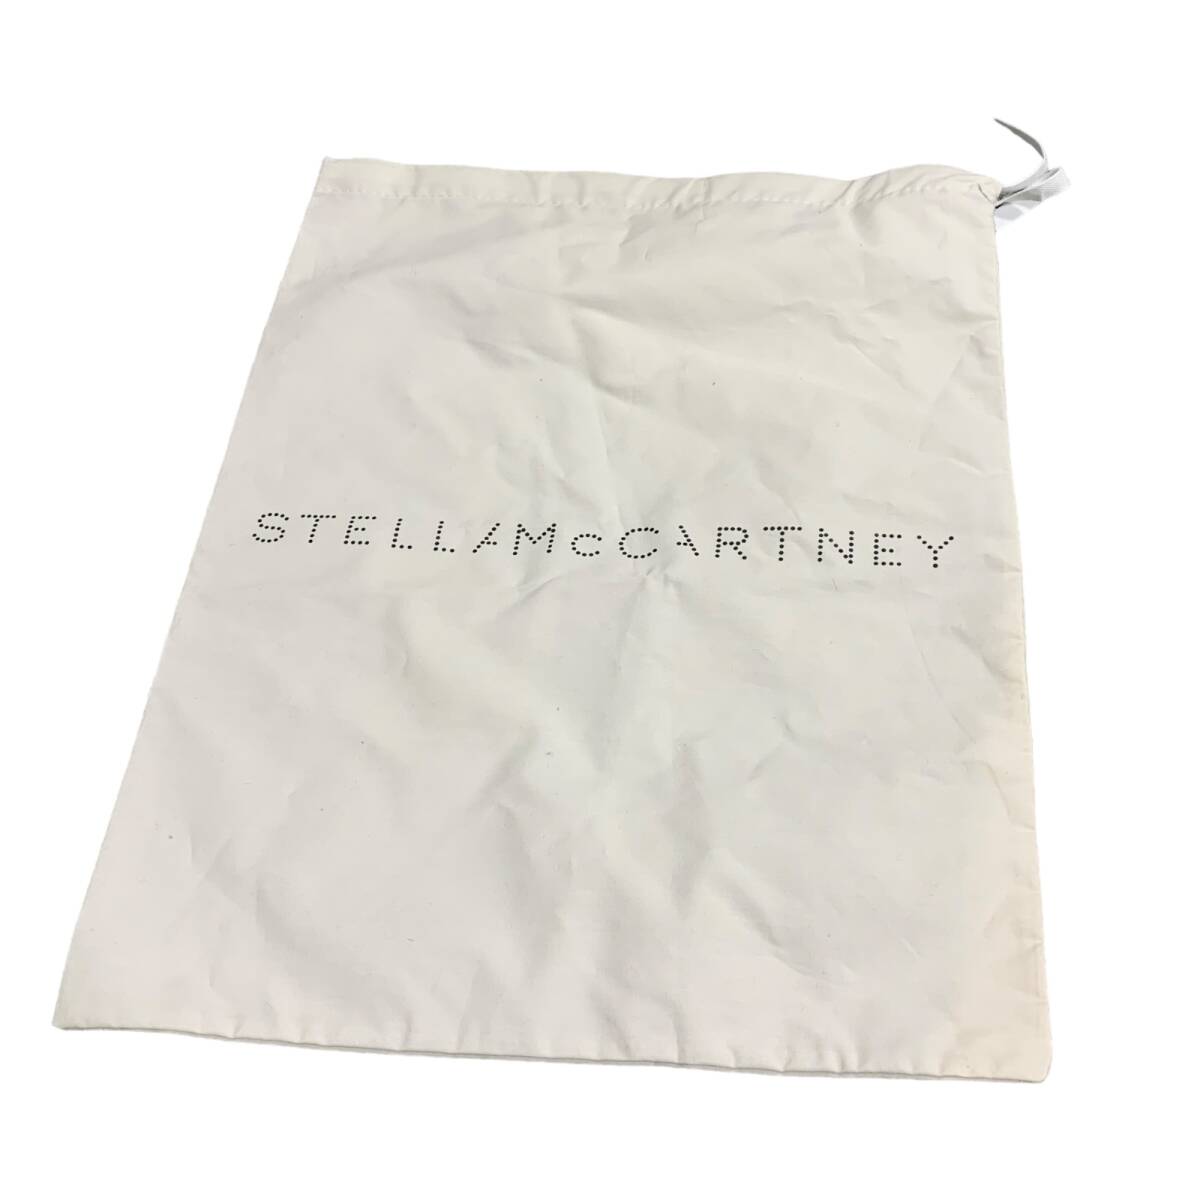 ◆中古品◆ステラマッカートニー stellamccartney サンダル サイズ 36 (日本サイズ約23cm) 黒 ブラック系 ヒール8cm 保管袋付き X61557NCの画像9